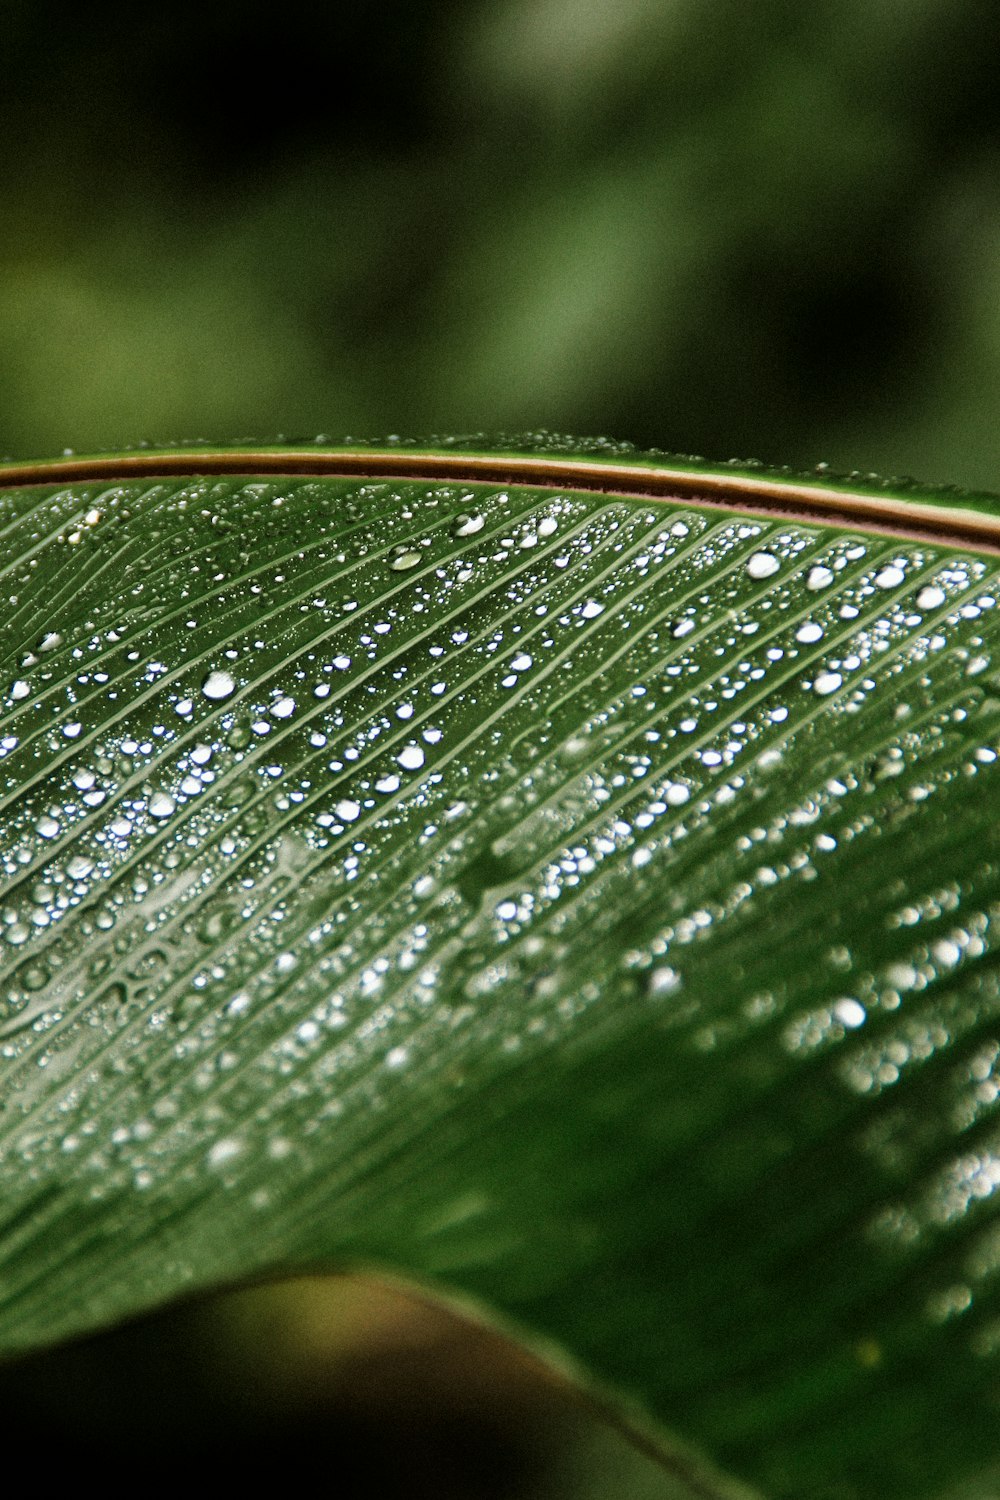 gotas de agua en la hoja verde